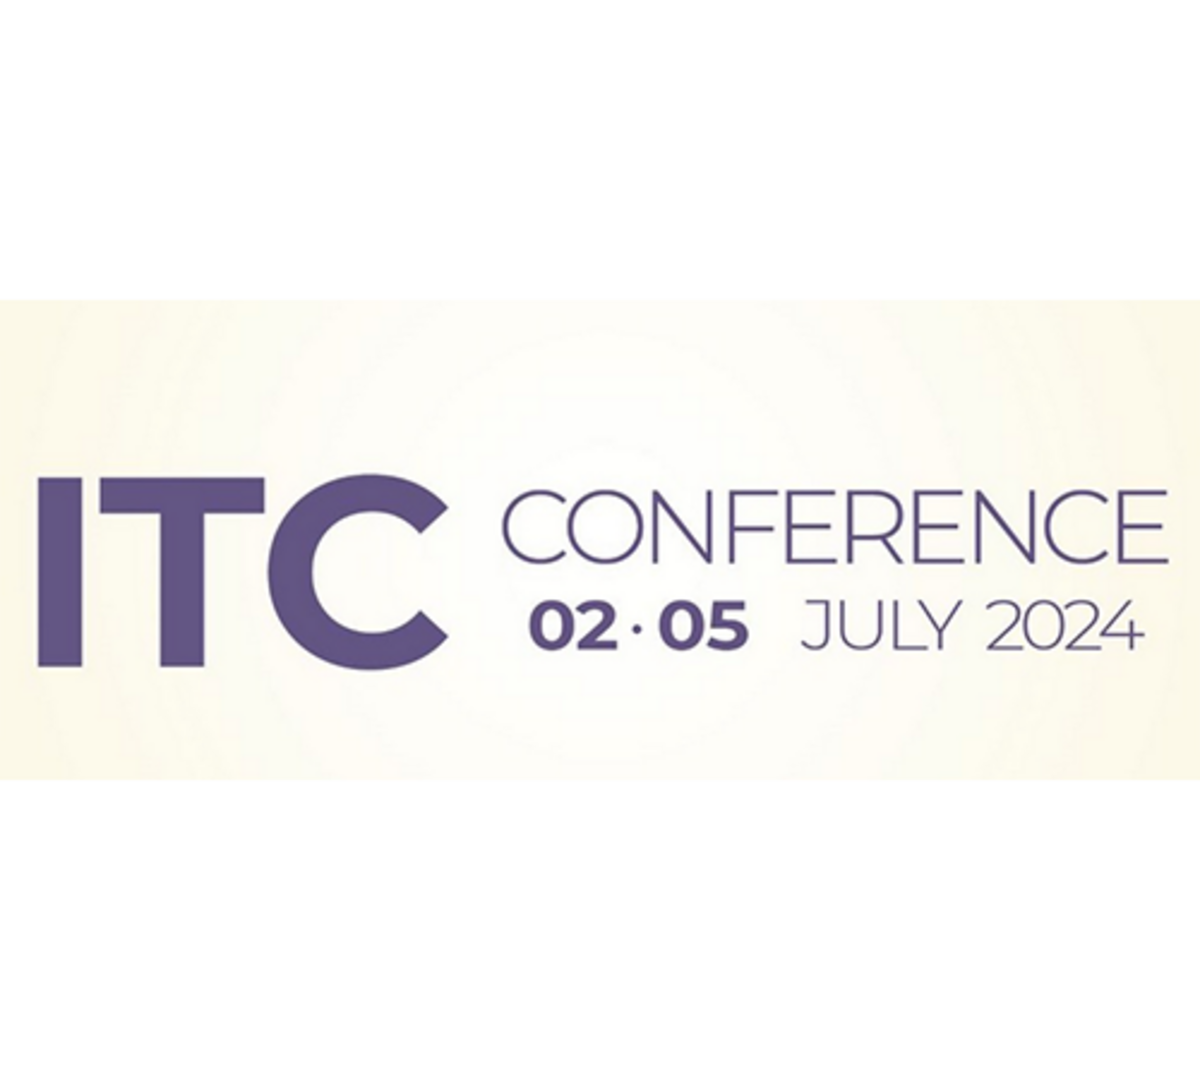 ITC CONFERENCE GRANADA 02-05 JULY 2024   